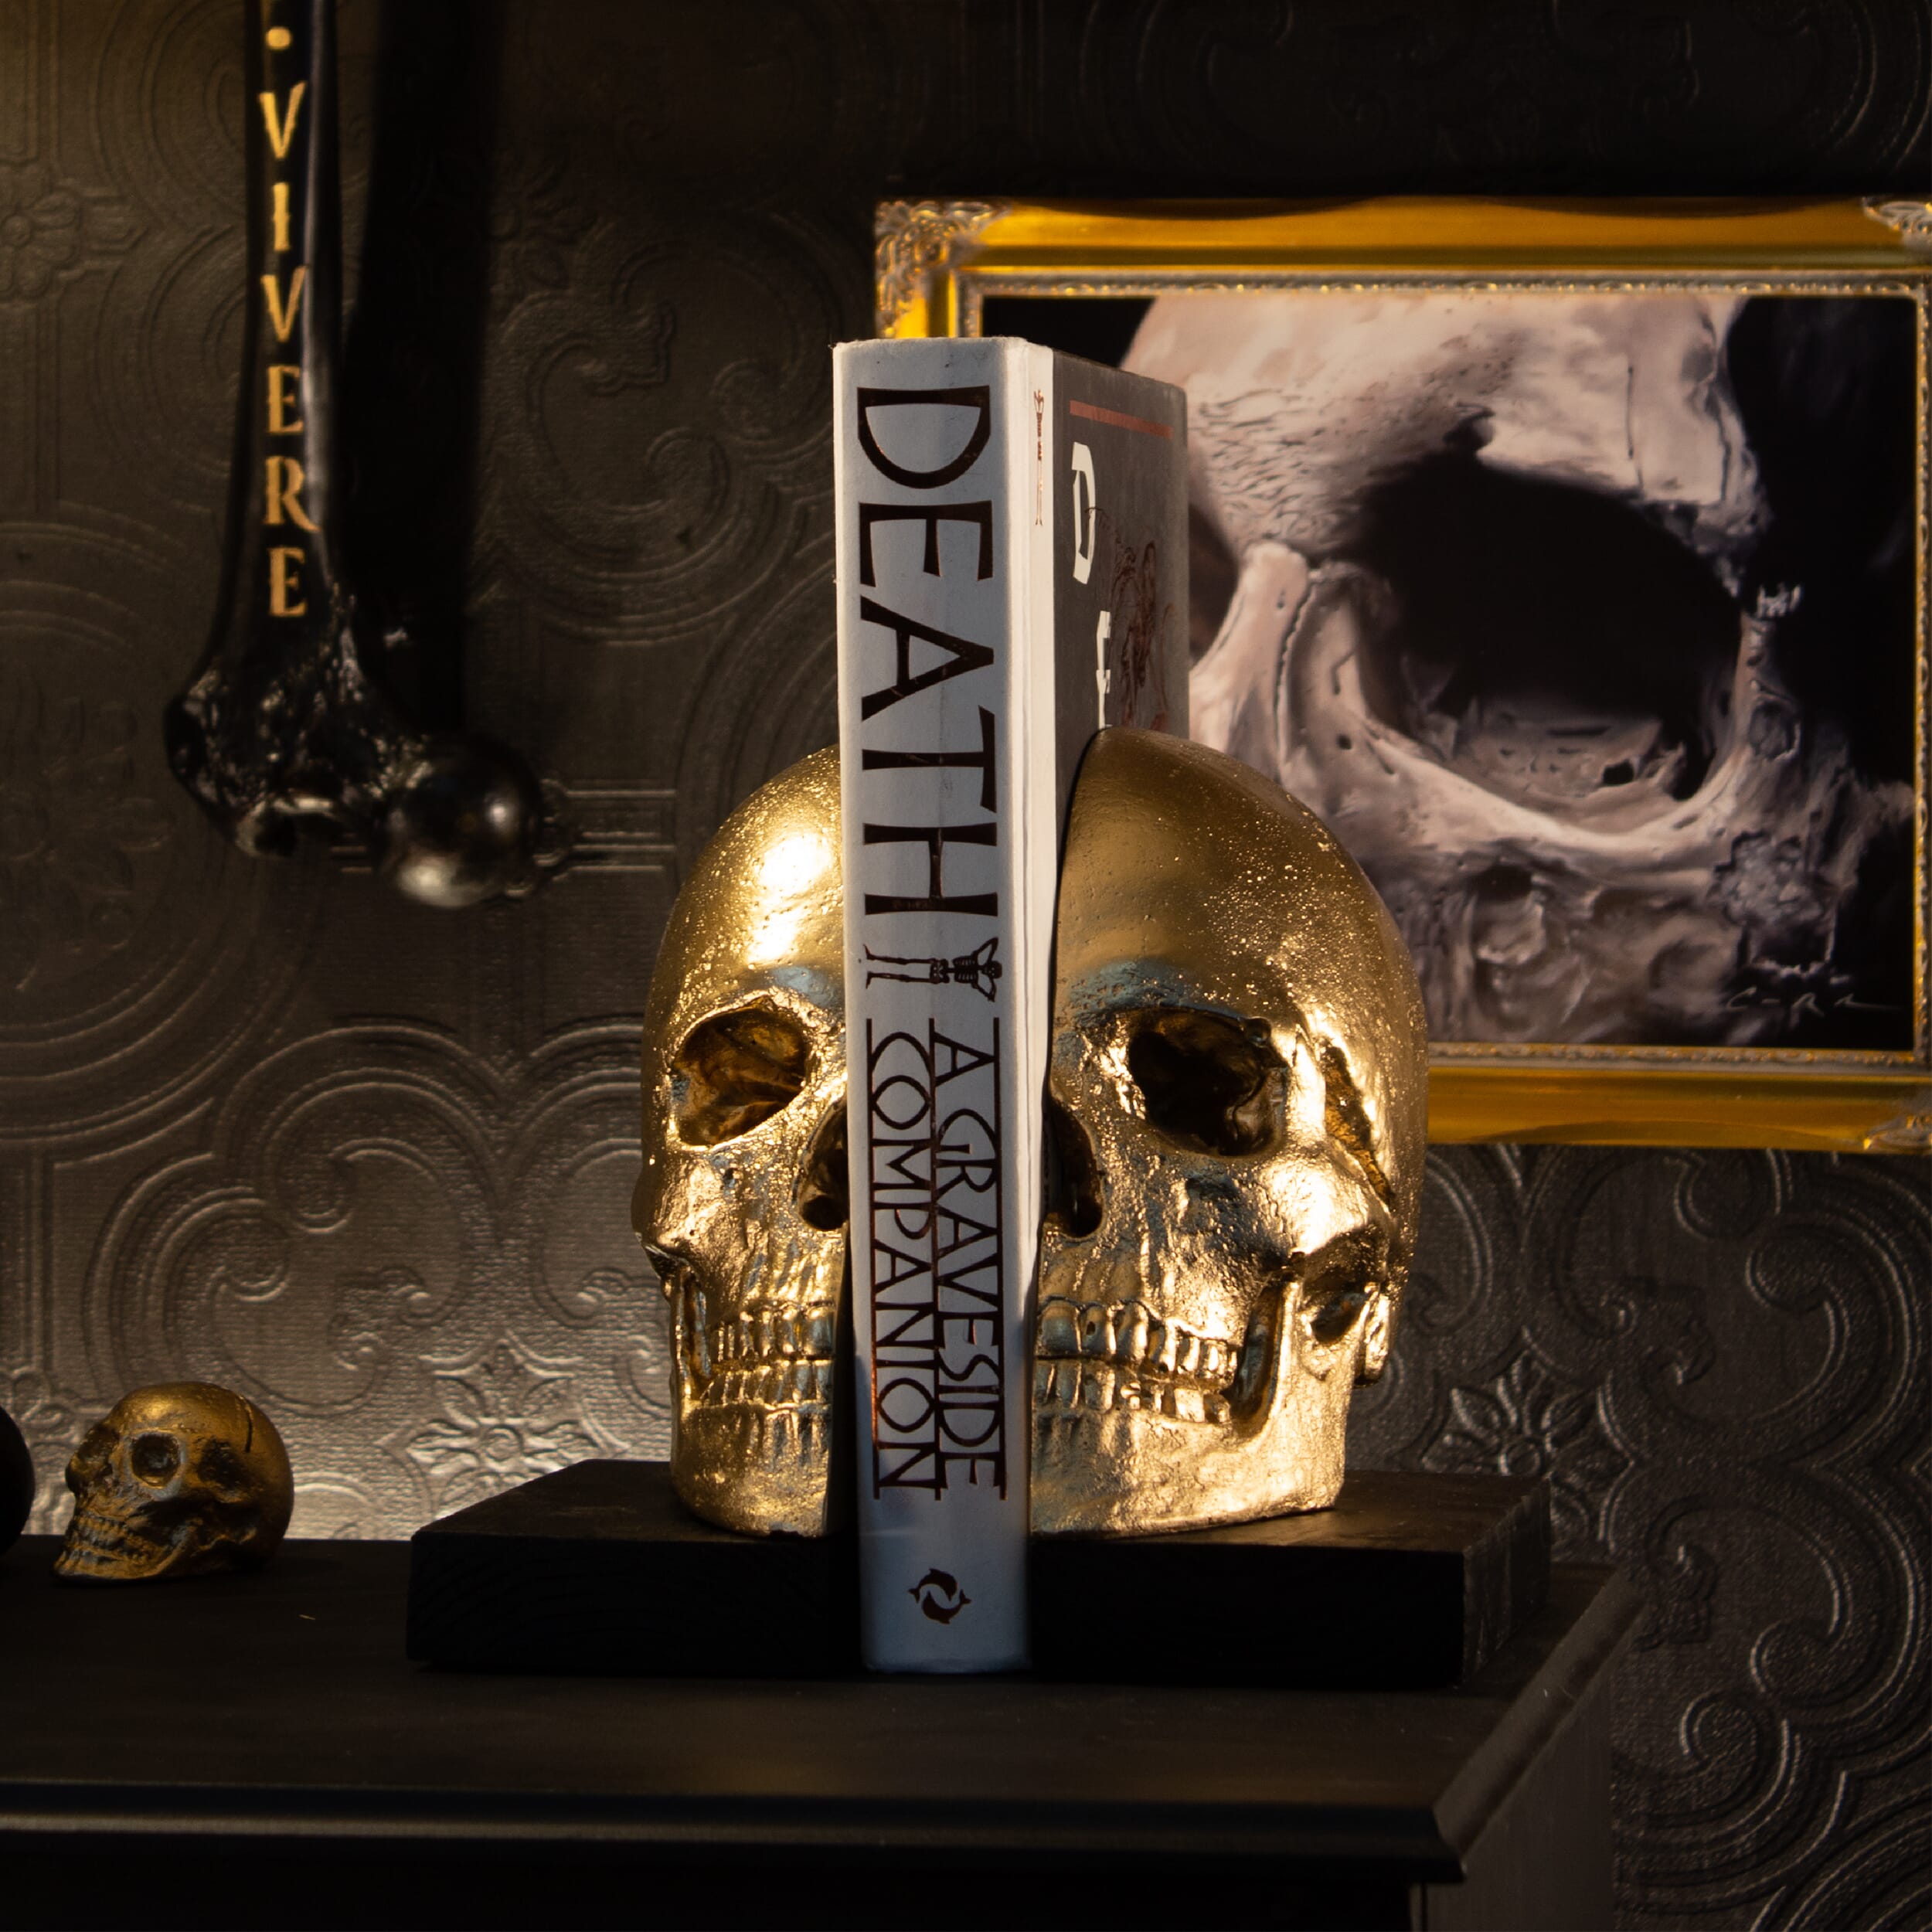 Skull bookmarks - The Blackened Teeth